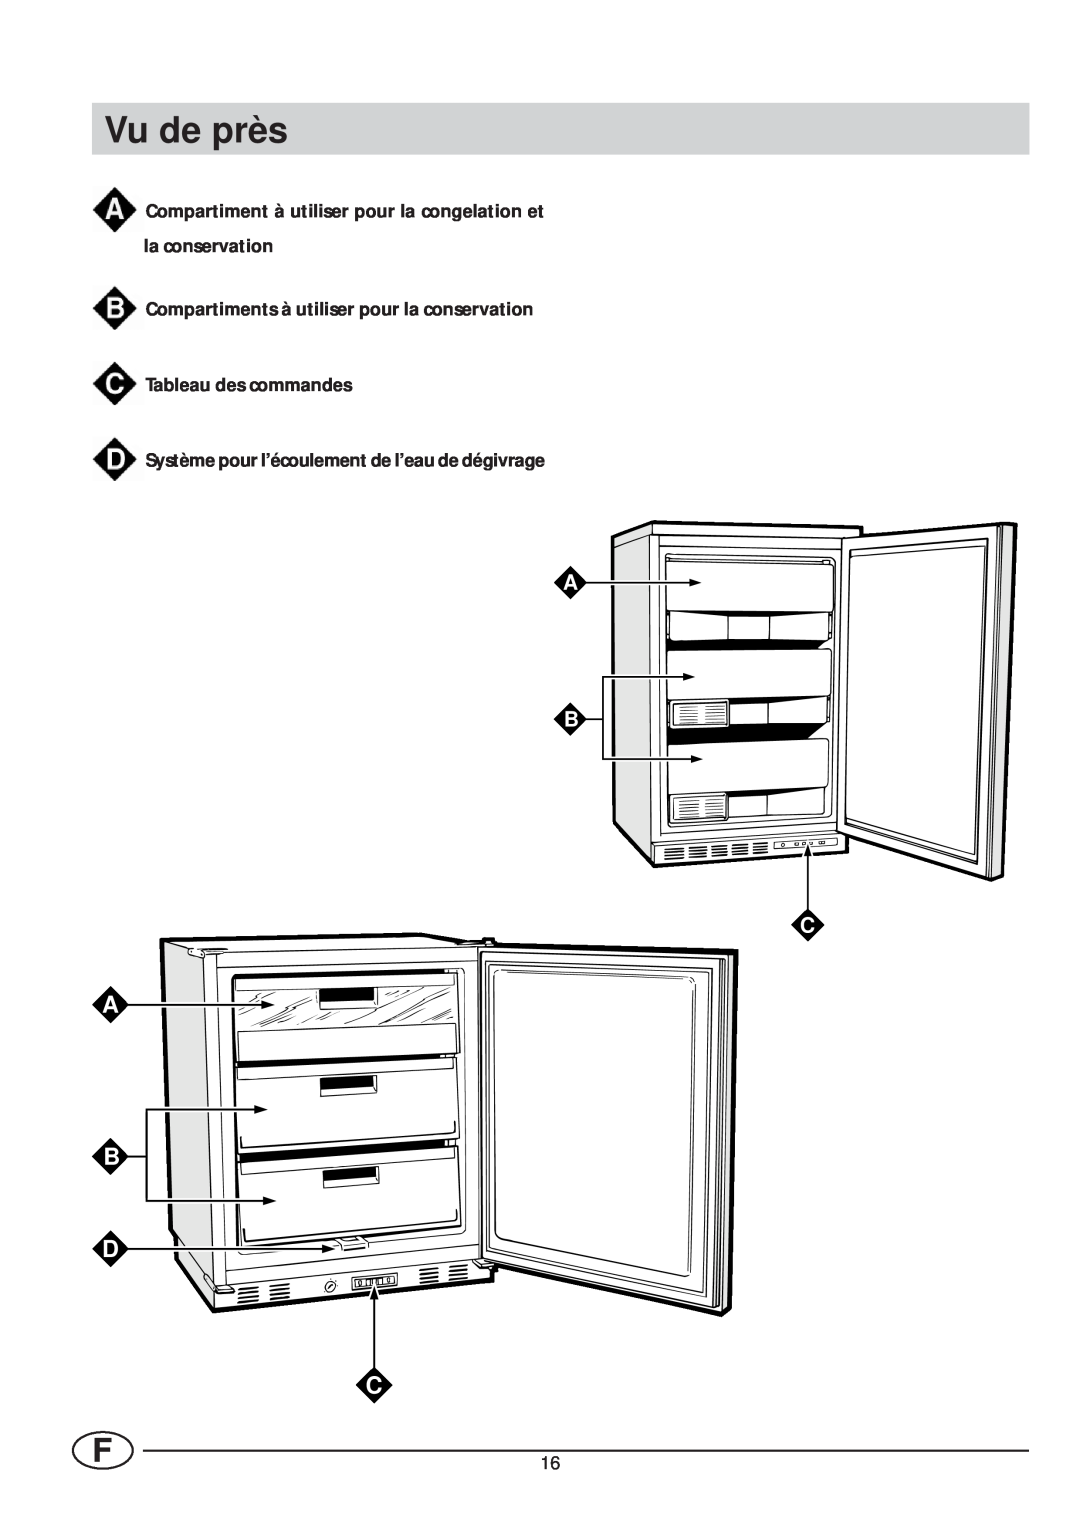 Smeg VR105NE1 manual Vu de près, Compartiment à utiliser pour la congelation et la conservation, A B D C, A B C 